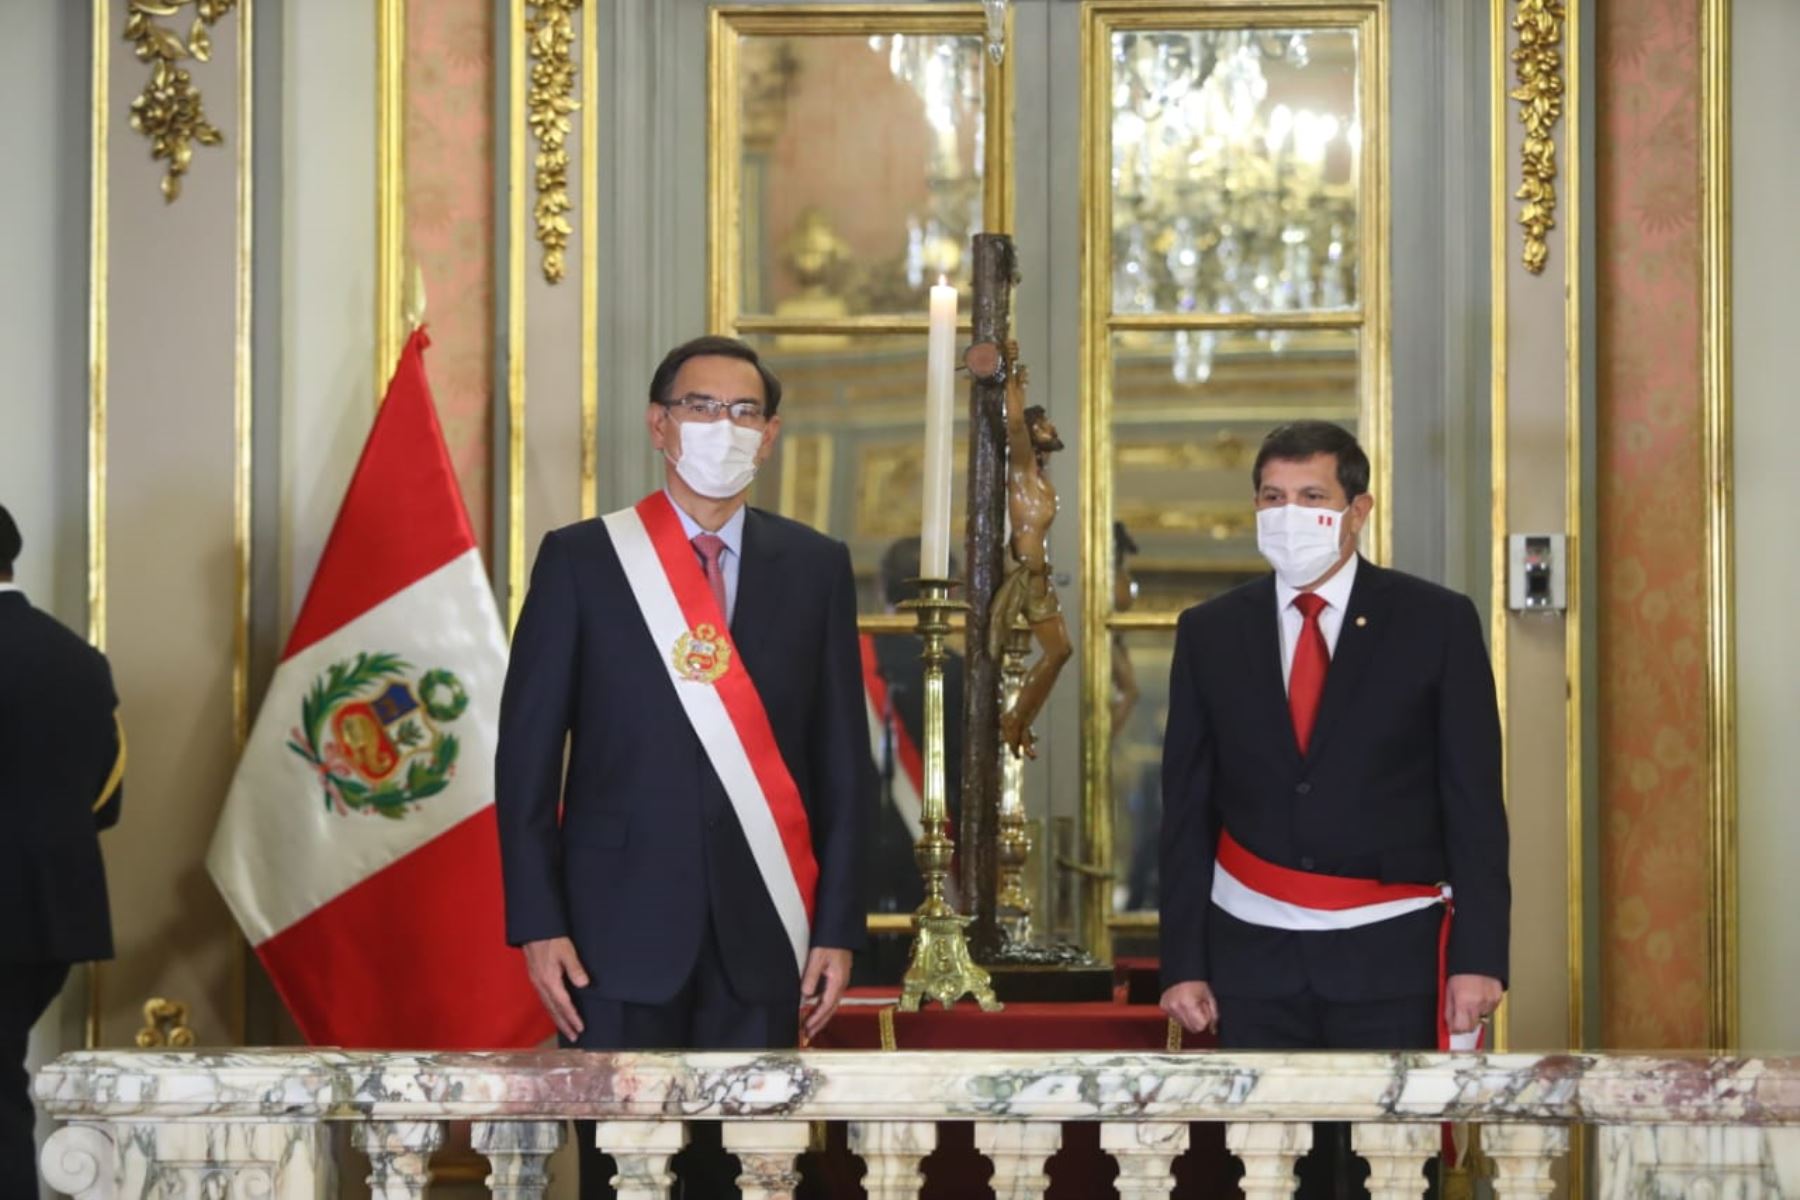 Presidente Martín Vizcarra tomó juramento a Jorge Luis Chávez Cresta como nuevo ministro de Defensa.

Foto: ANDINA / Presidencia